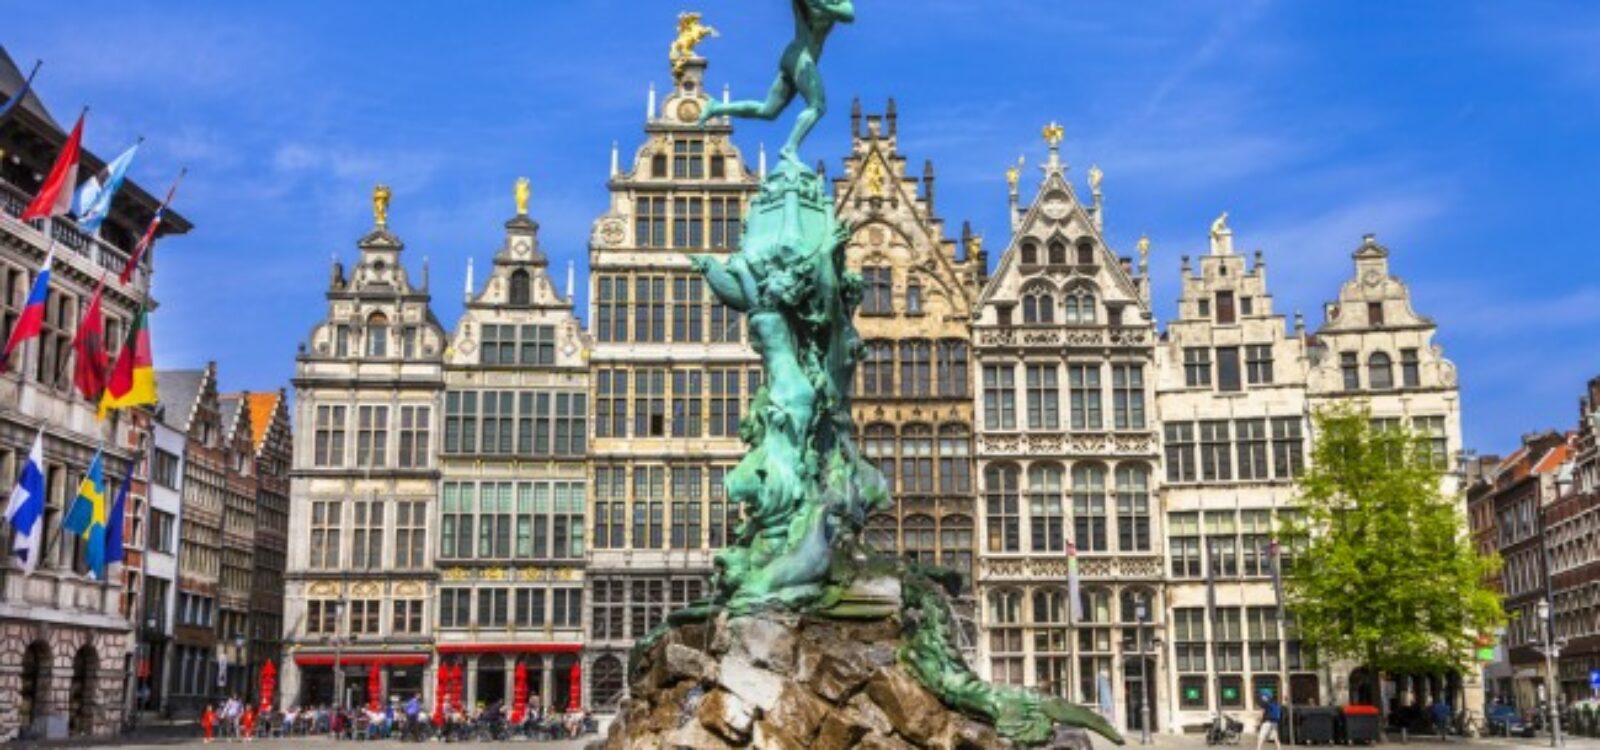 traditional-flemish-architecture-in-belgium-650×434